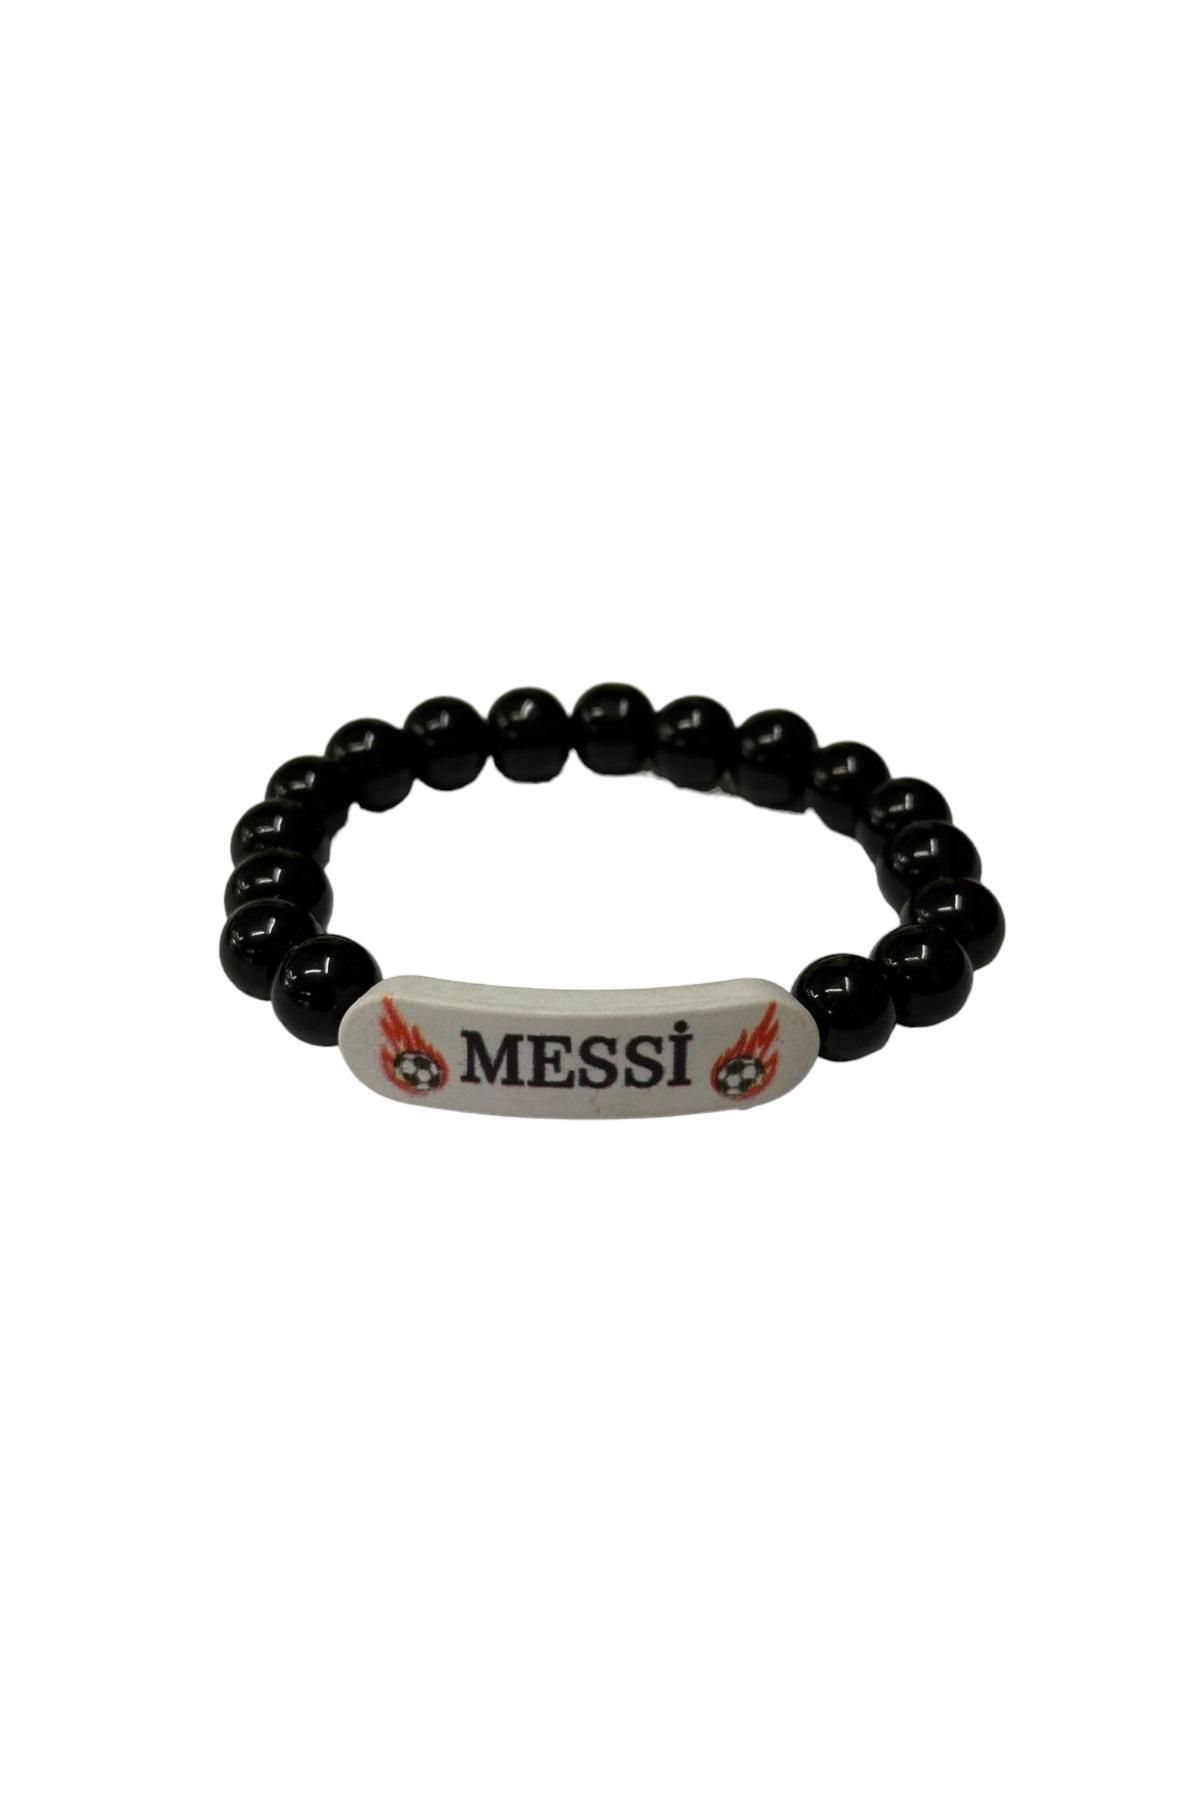 CassidoShoes Messi Baskılı Taraftar Unisex Boncuk Bileklik BONCUKBİLEKLİK11